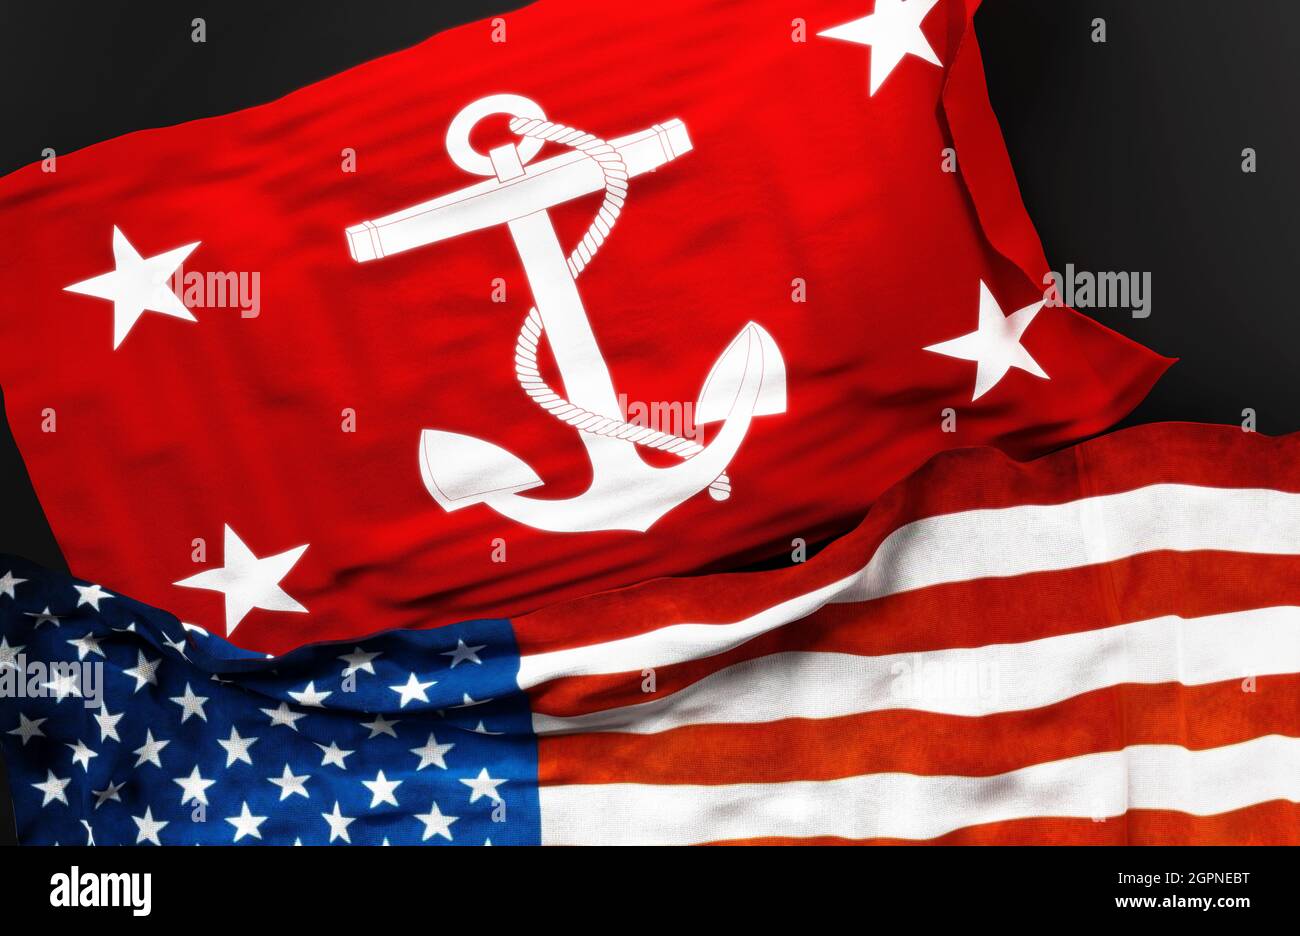 Flagge der USA zum Untersekretär der Marine zusammen mit einer Flagge der Vereinigten Staaten von Amerika als Symbol für eine Verbindung zwischen ihnen, 3d-Illustration Stockfoto